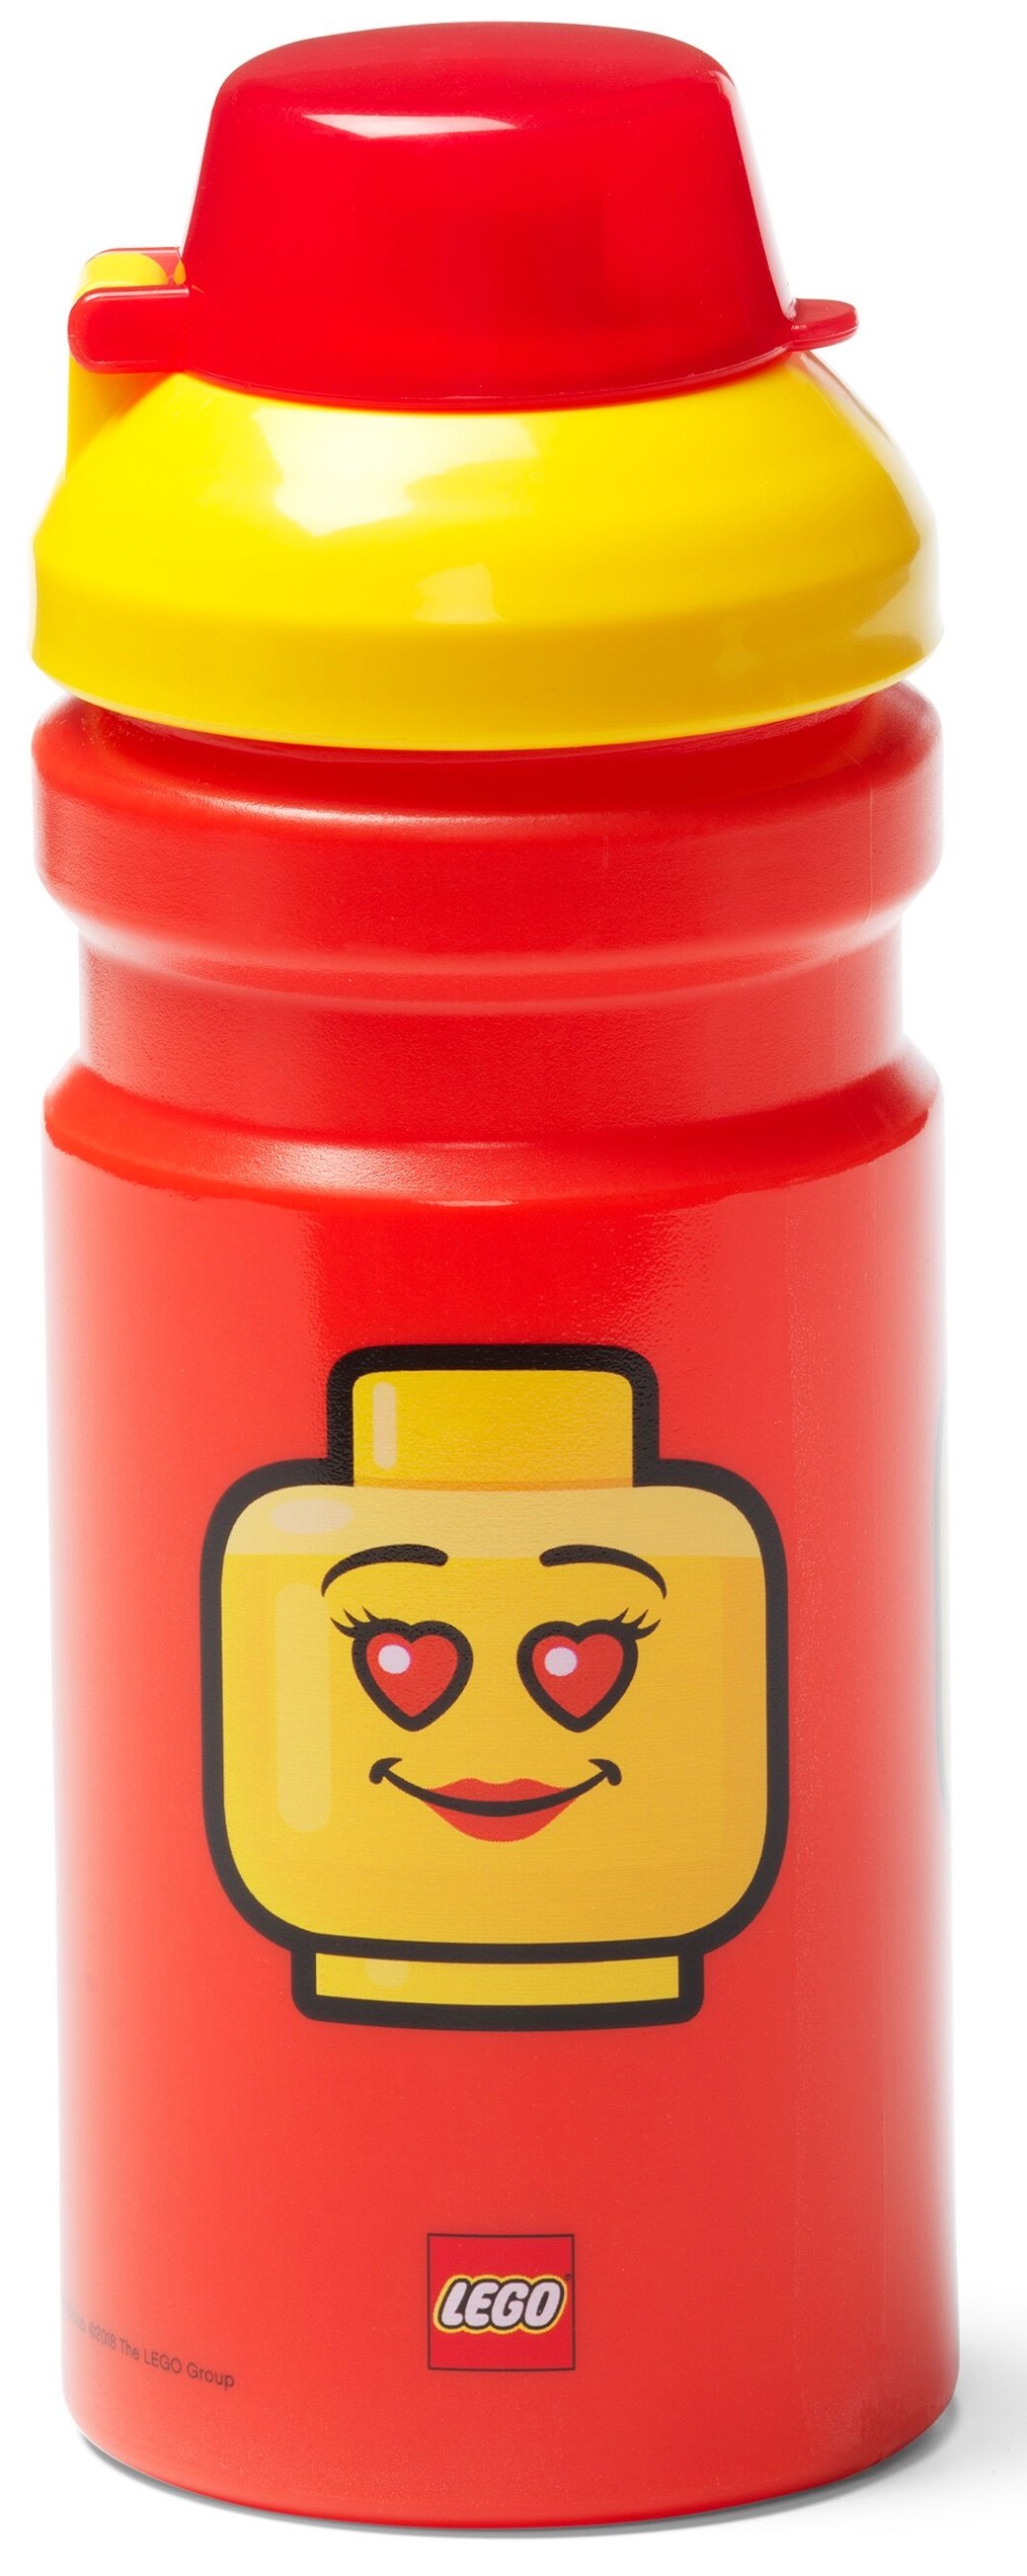 Etna Rommelig Regeneratief LEGO® Drinkbeker Kopen? Leuke Fles Voor Meiden | Cookinglife!